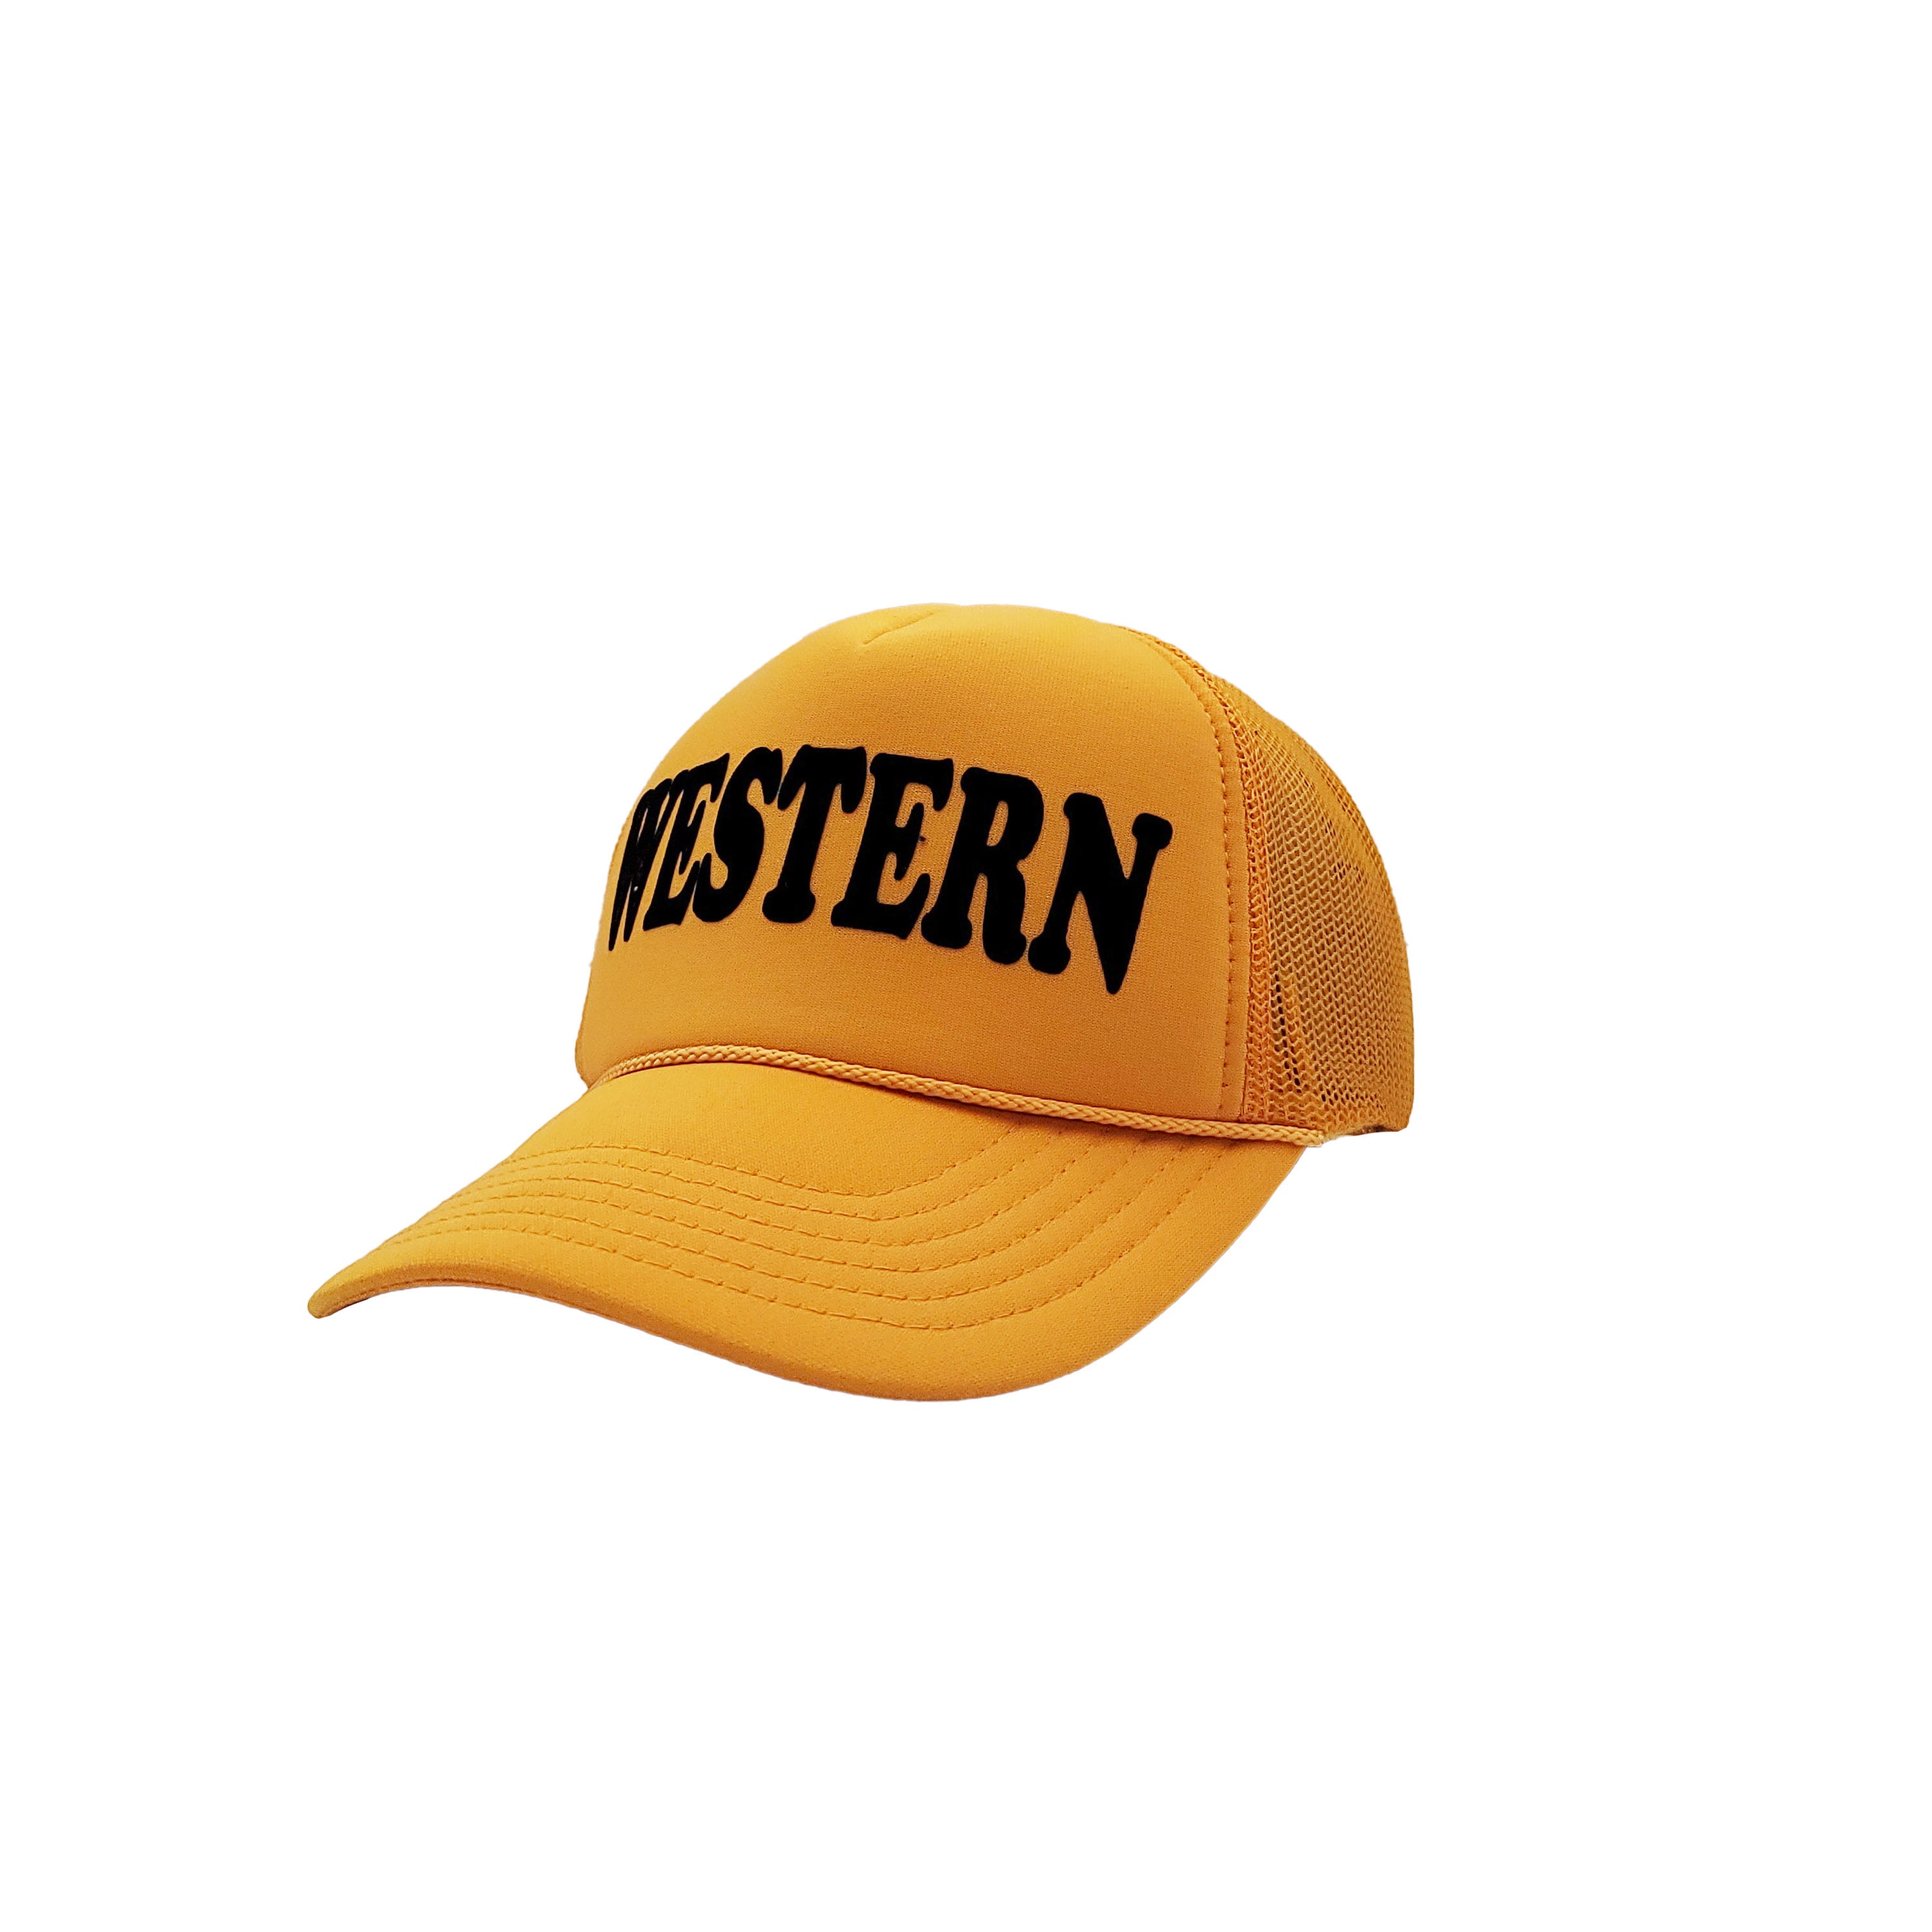 Western foam trucker hat by Rodeo Hippie